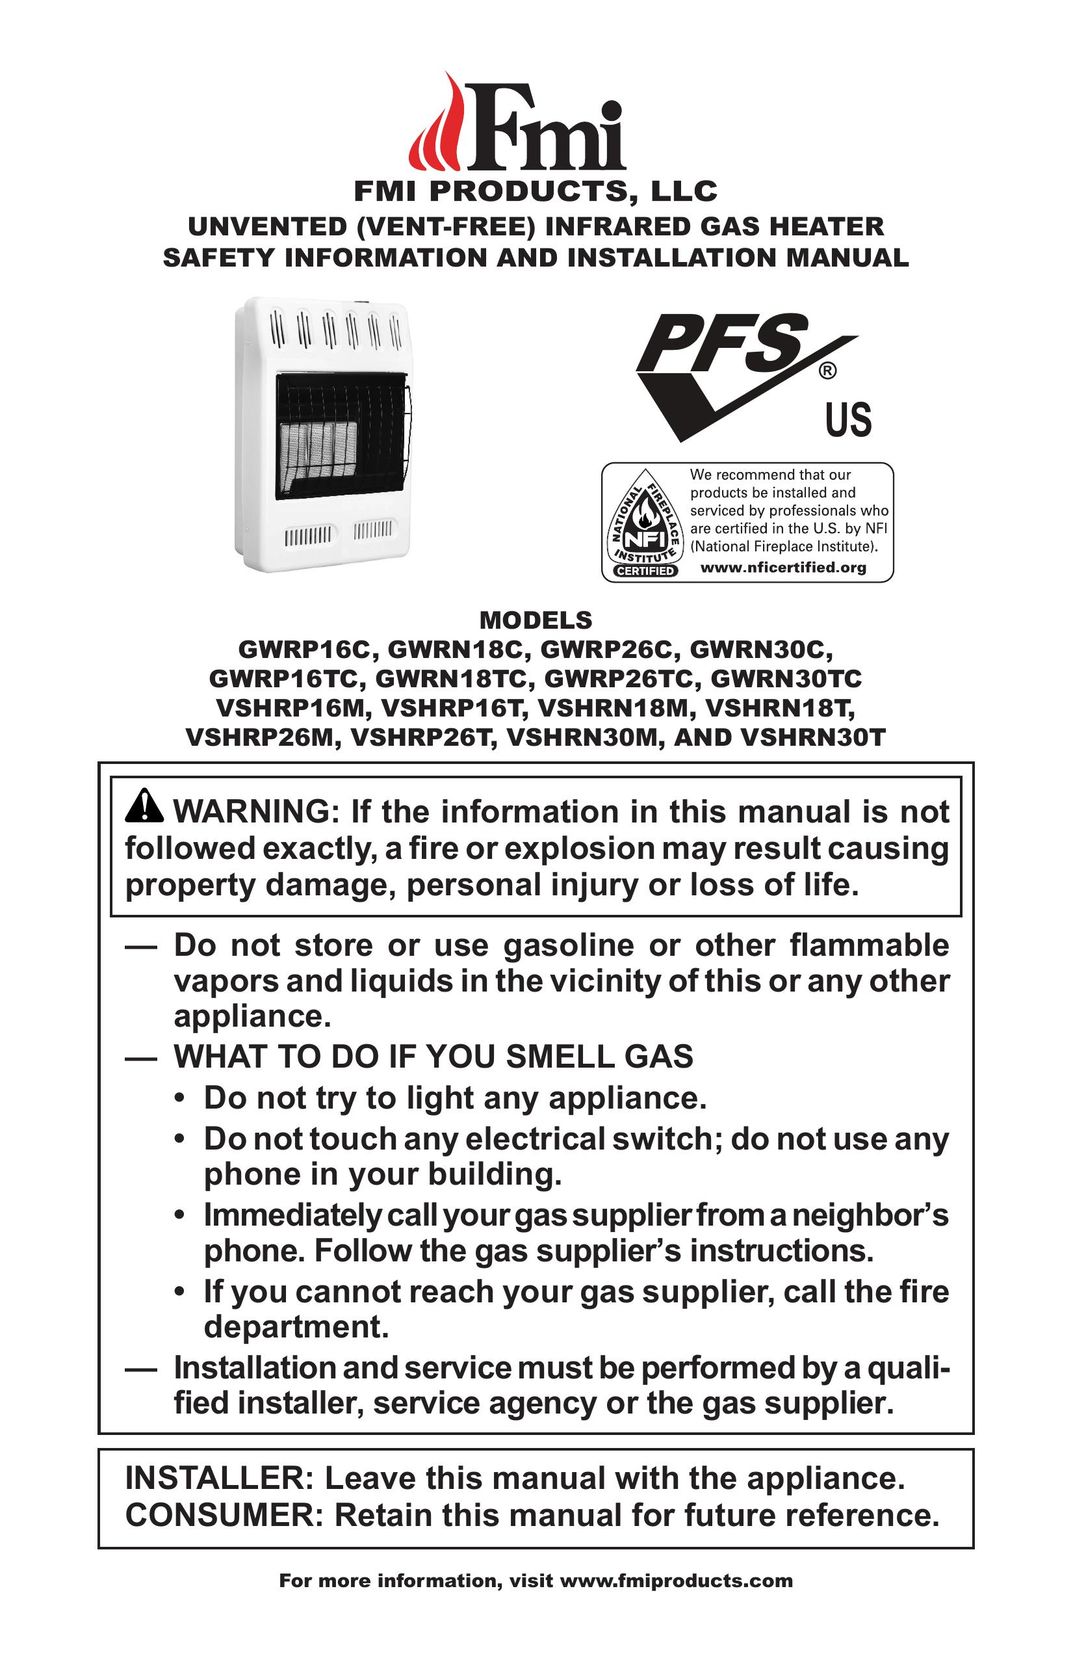 FMI VSHRP16M Gas Heater User Manual